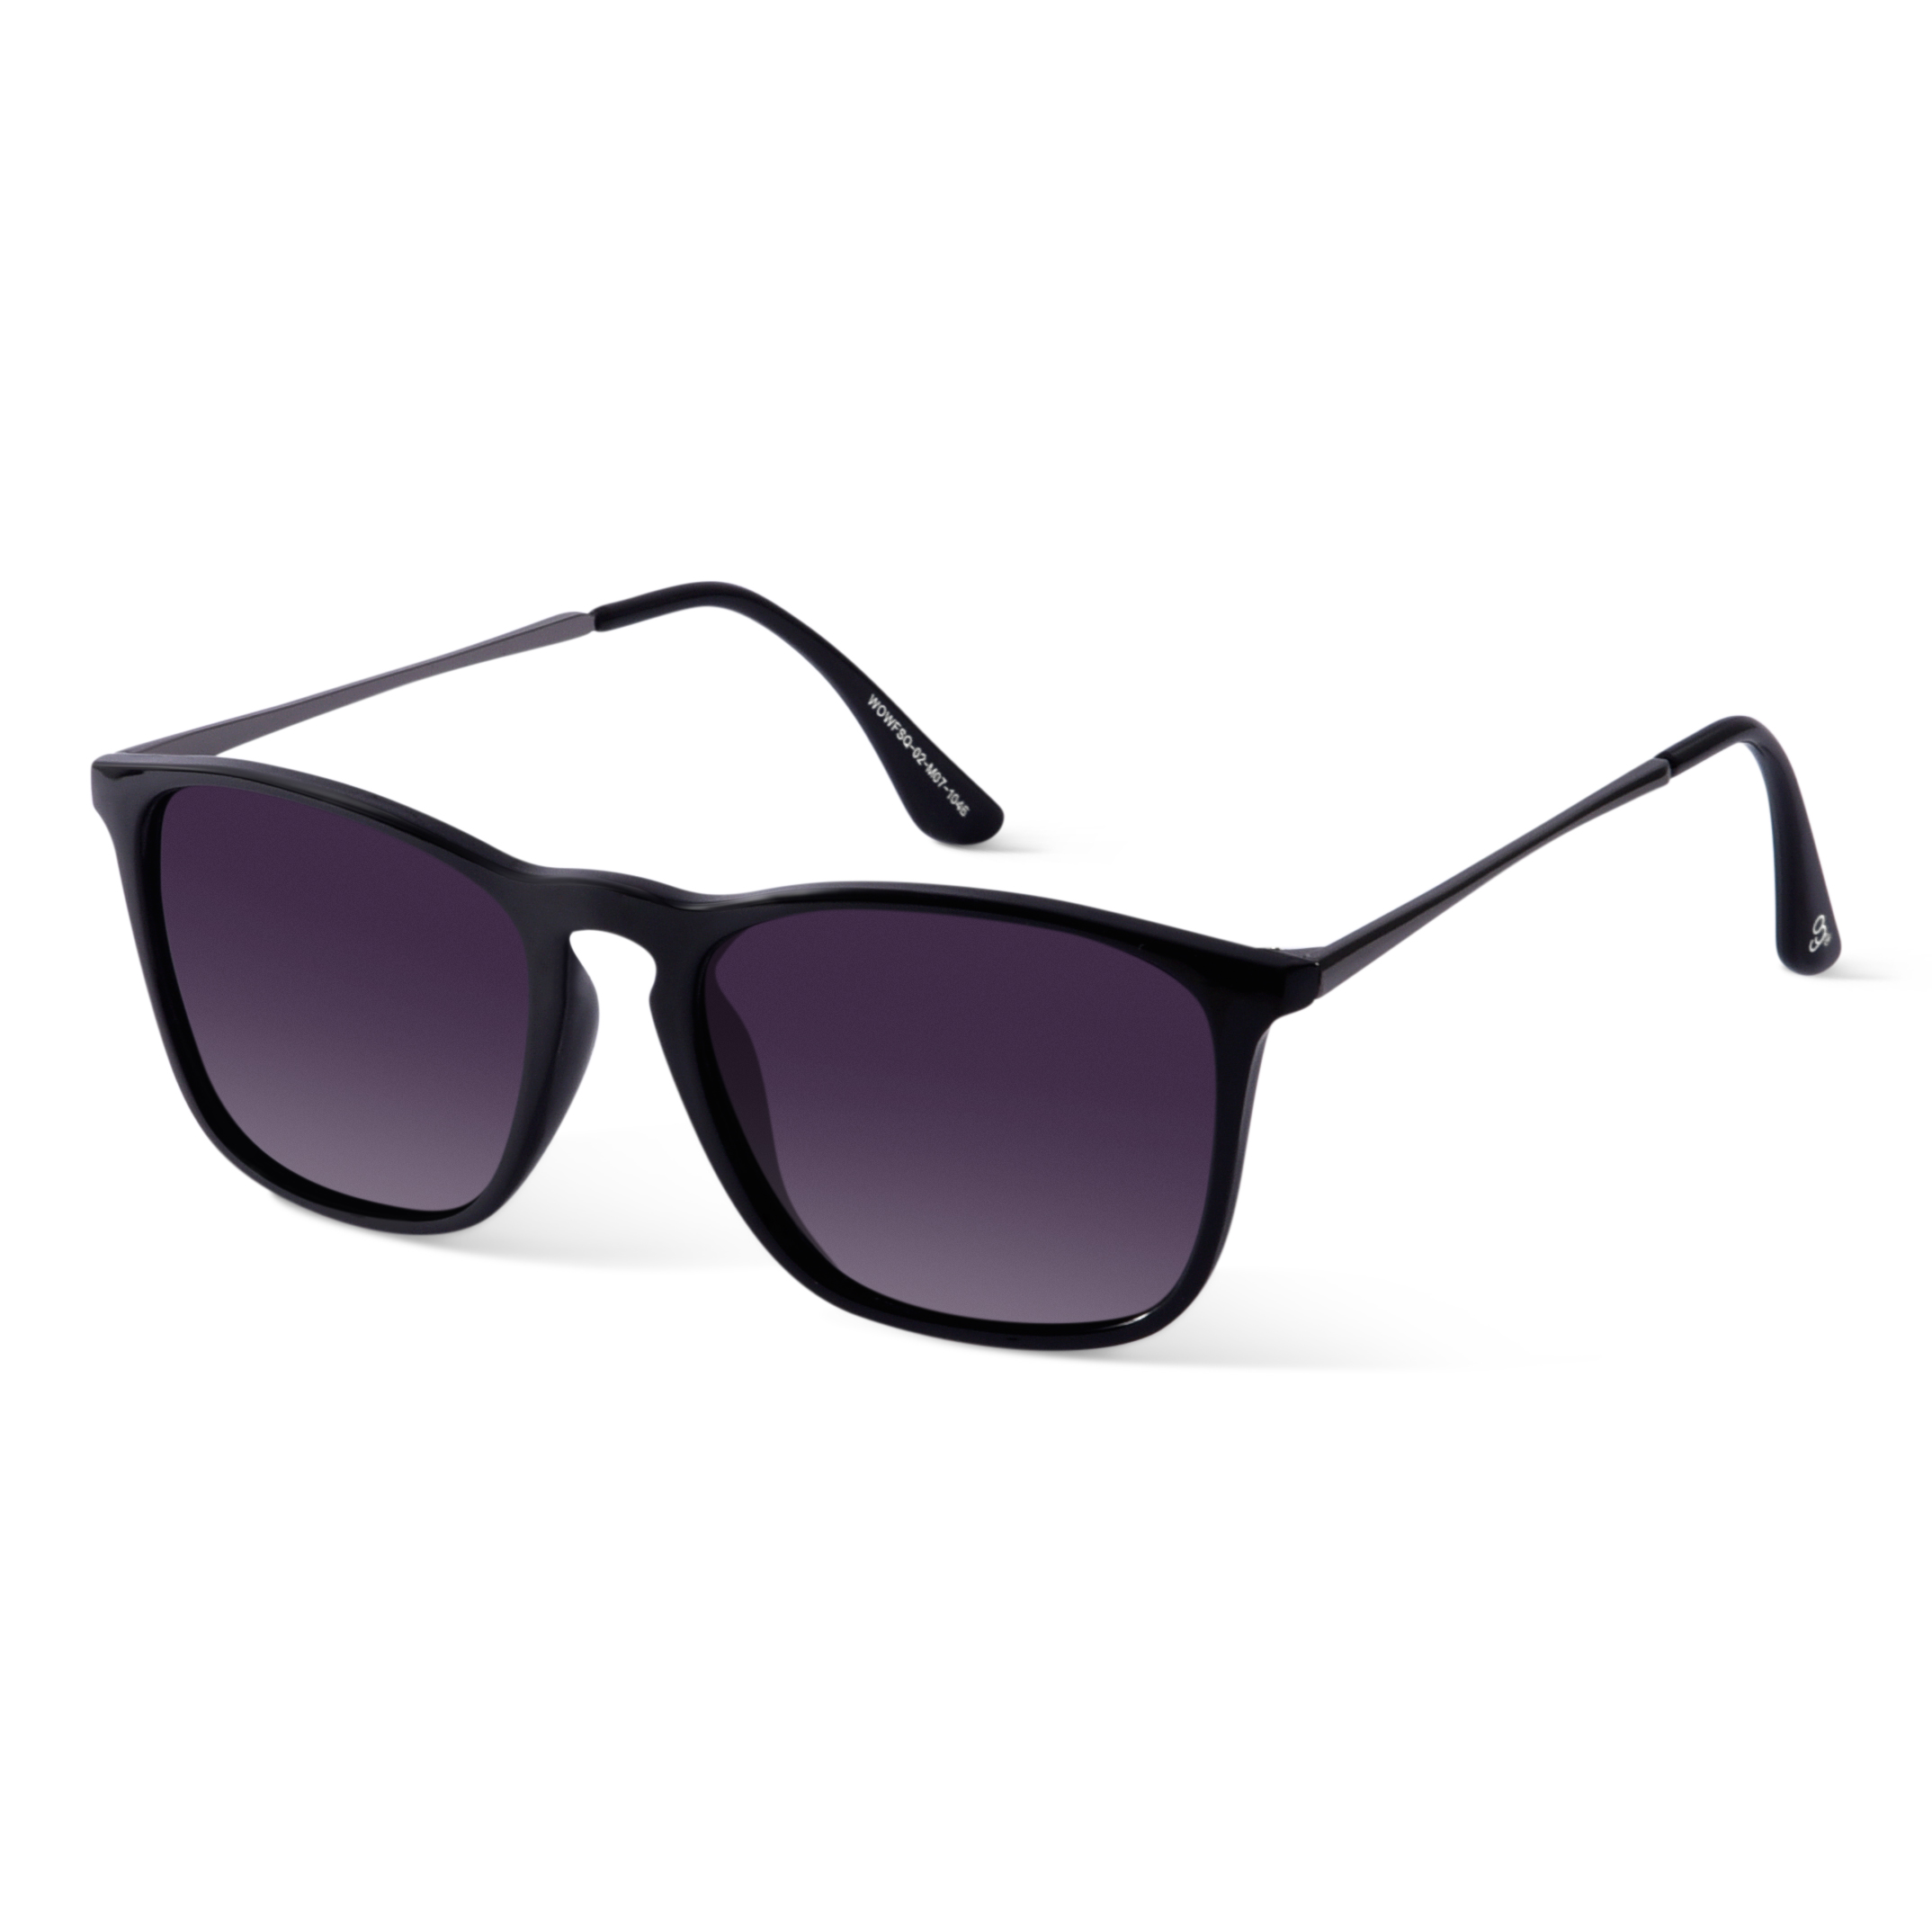 Buy Silver Fox Polarized Square Sunglasses - Woggles